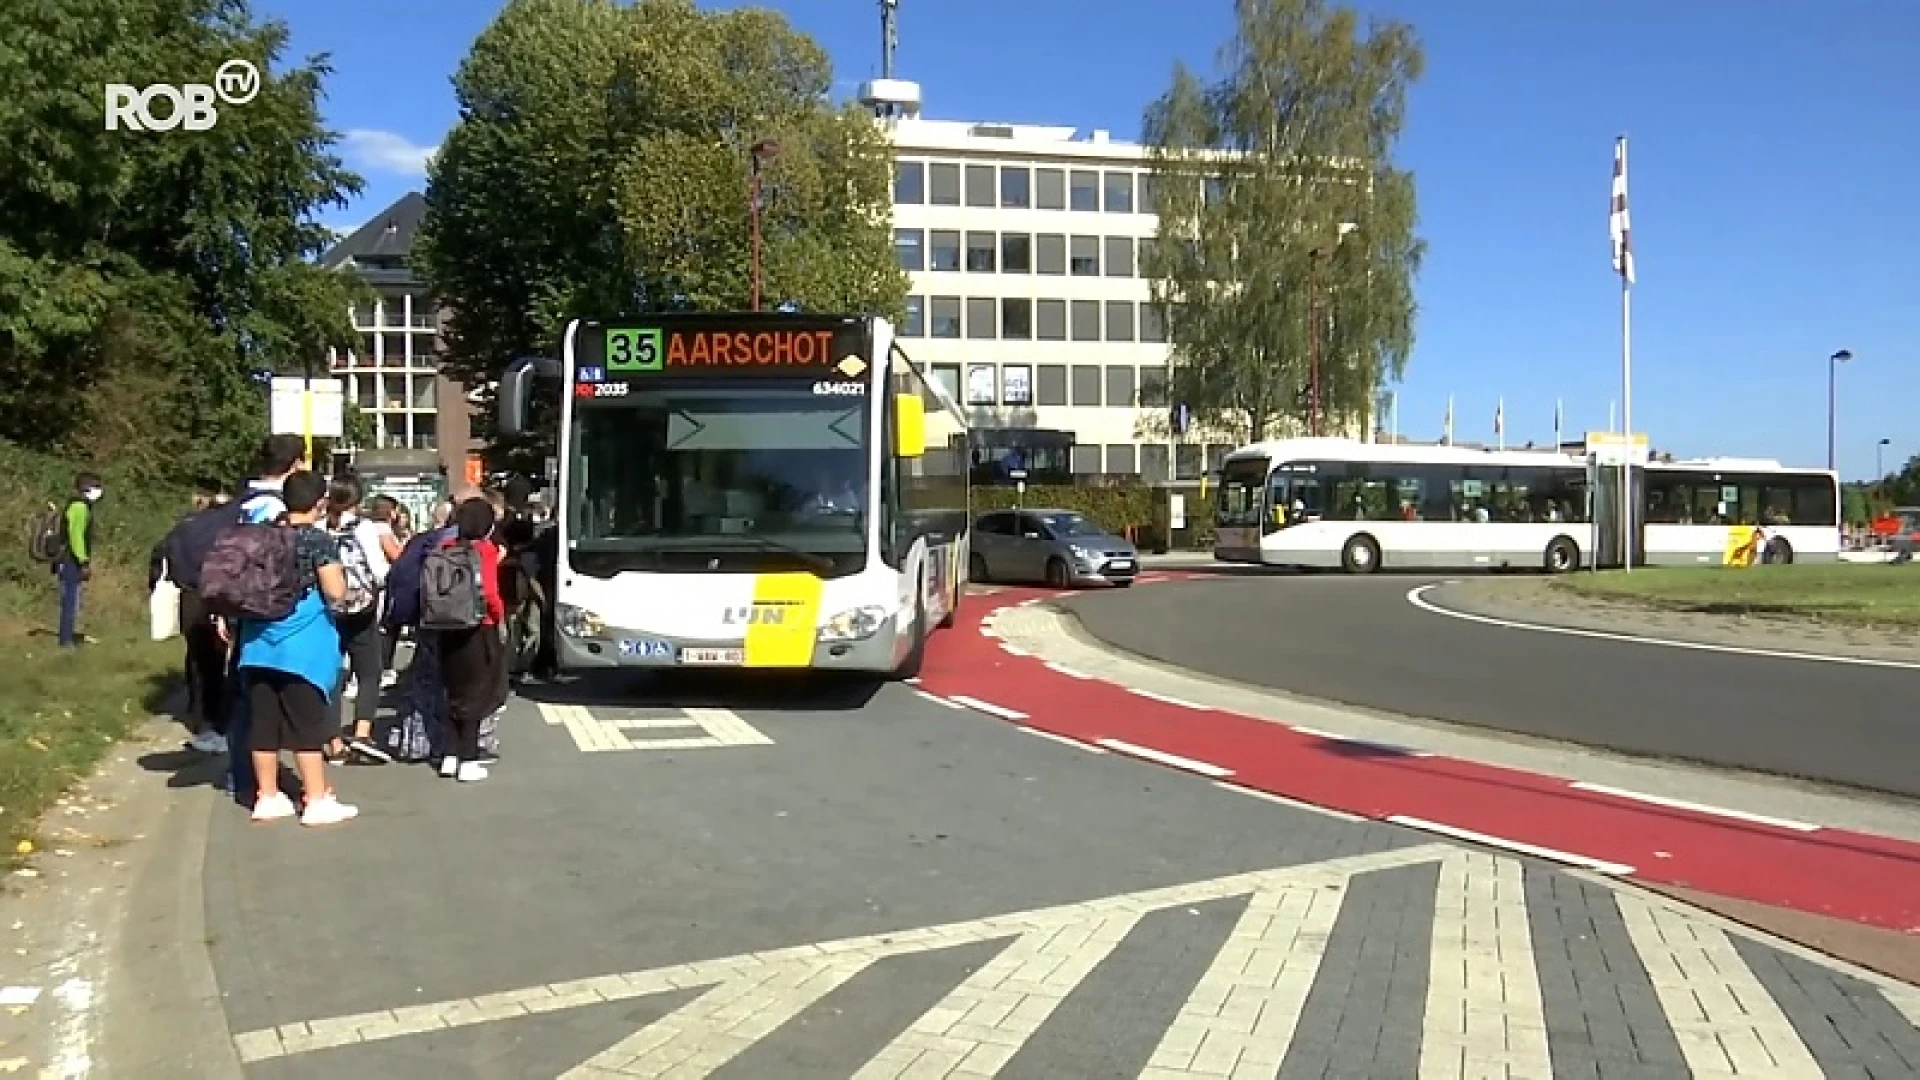 Gerichter busverkeer, deelwagens en flextaxi's: nieuw plan voor openbaar vervoer in onze regio is klaar